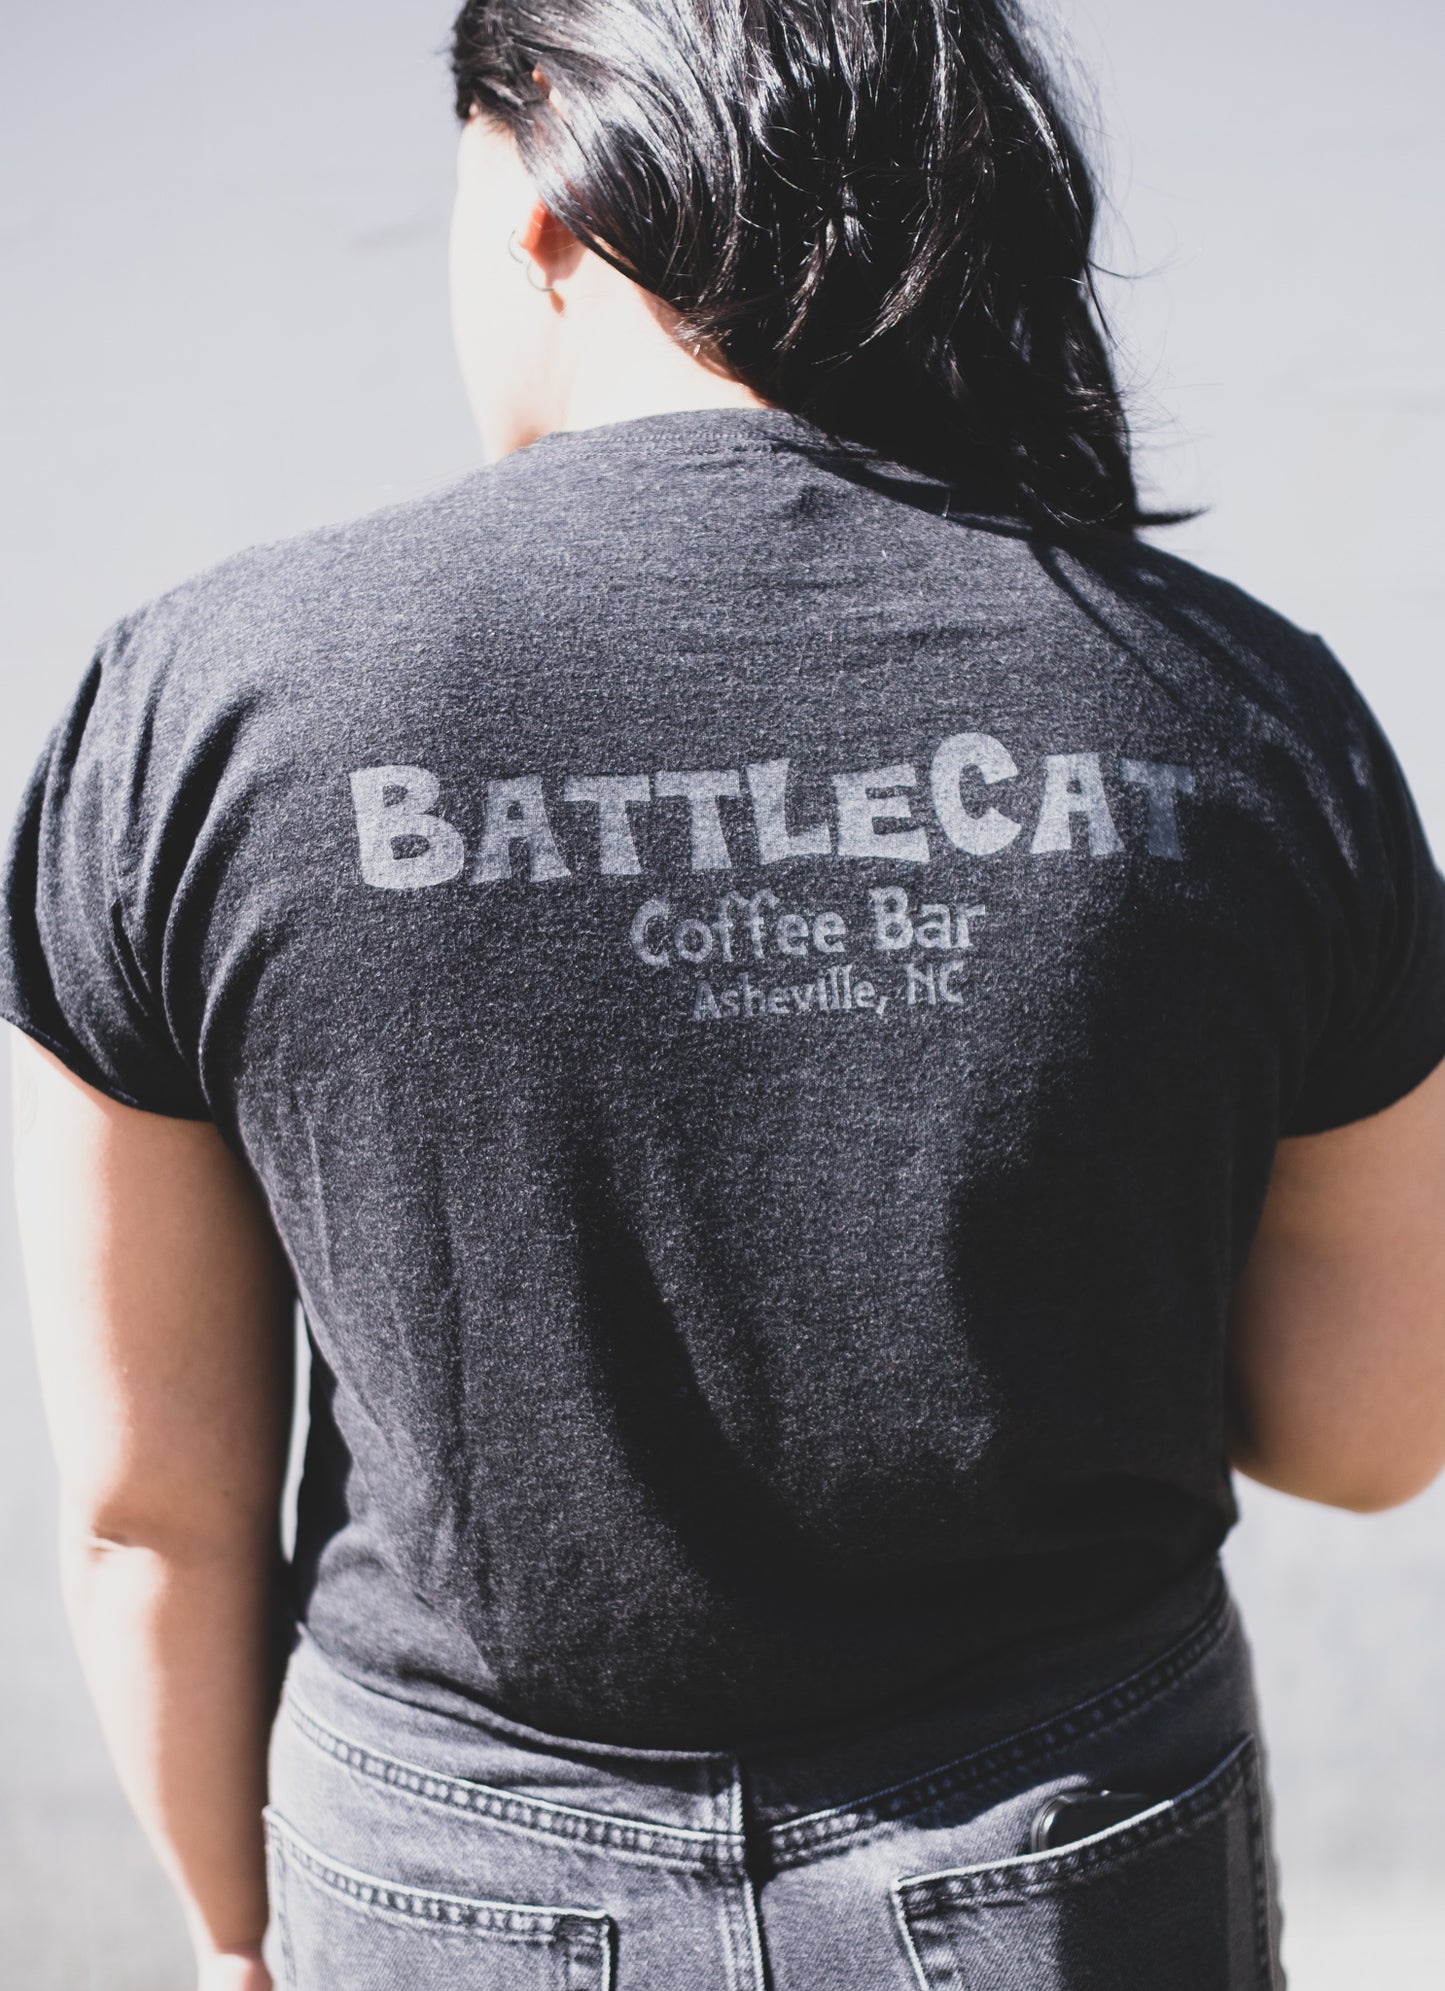 Battlecat Logo Shirt - Grey